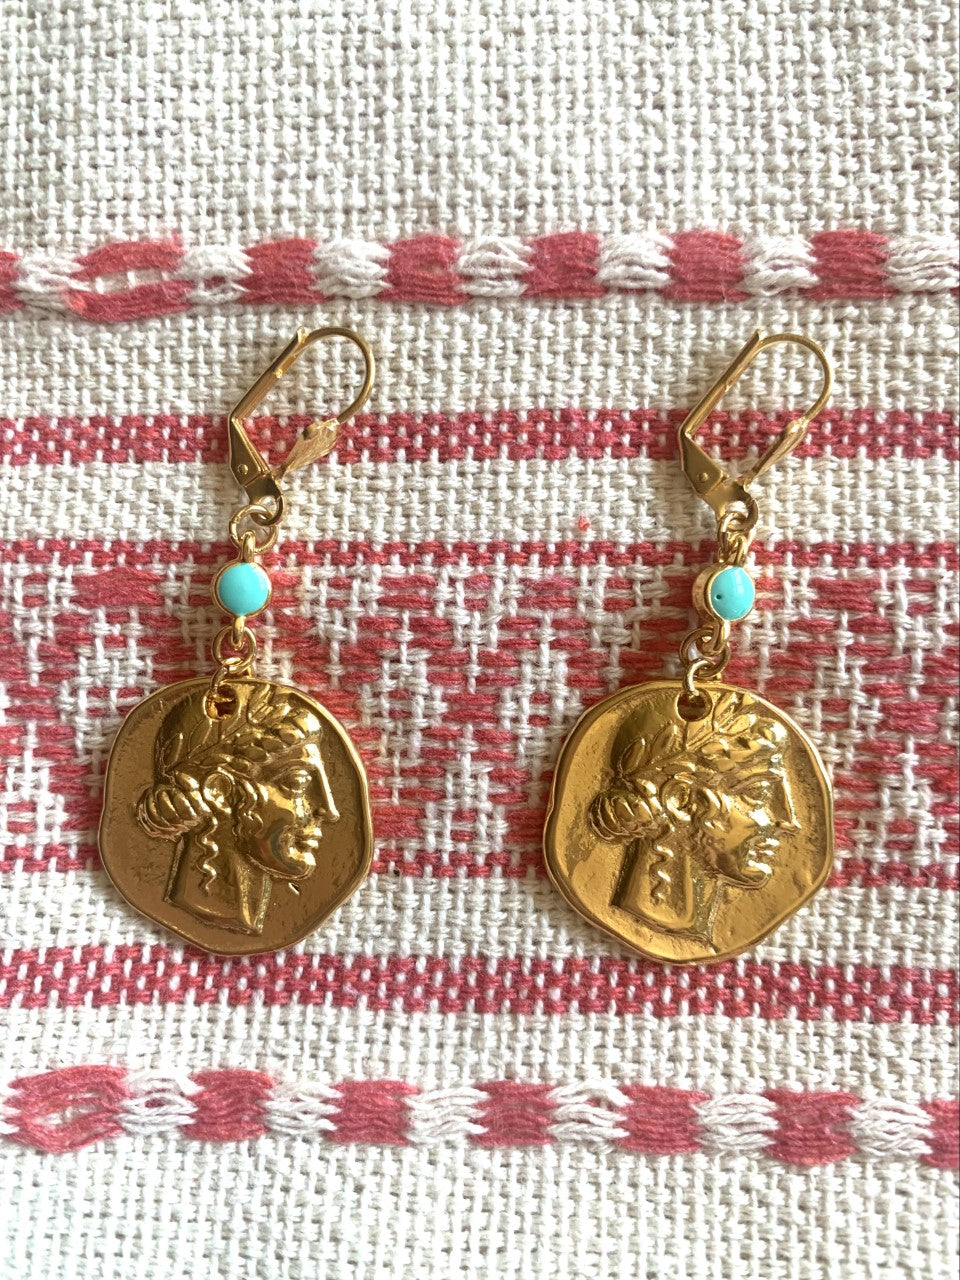 Greek Goddess earrings